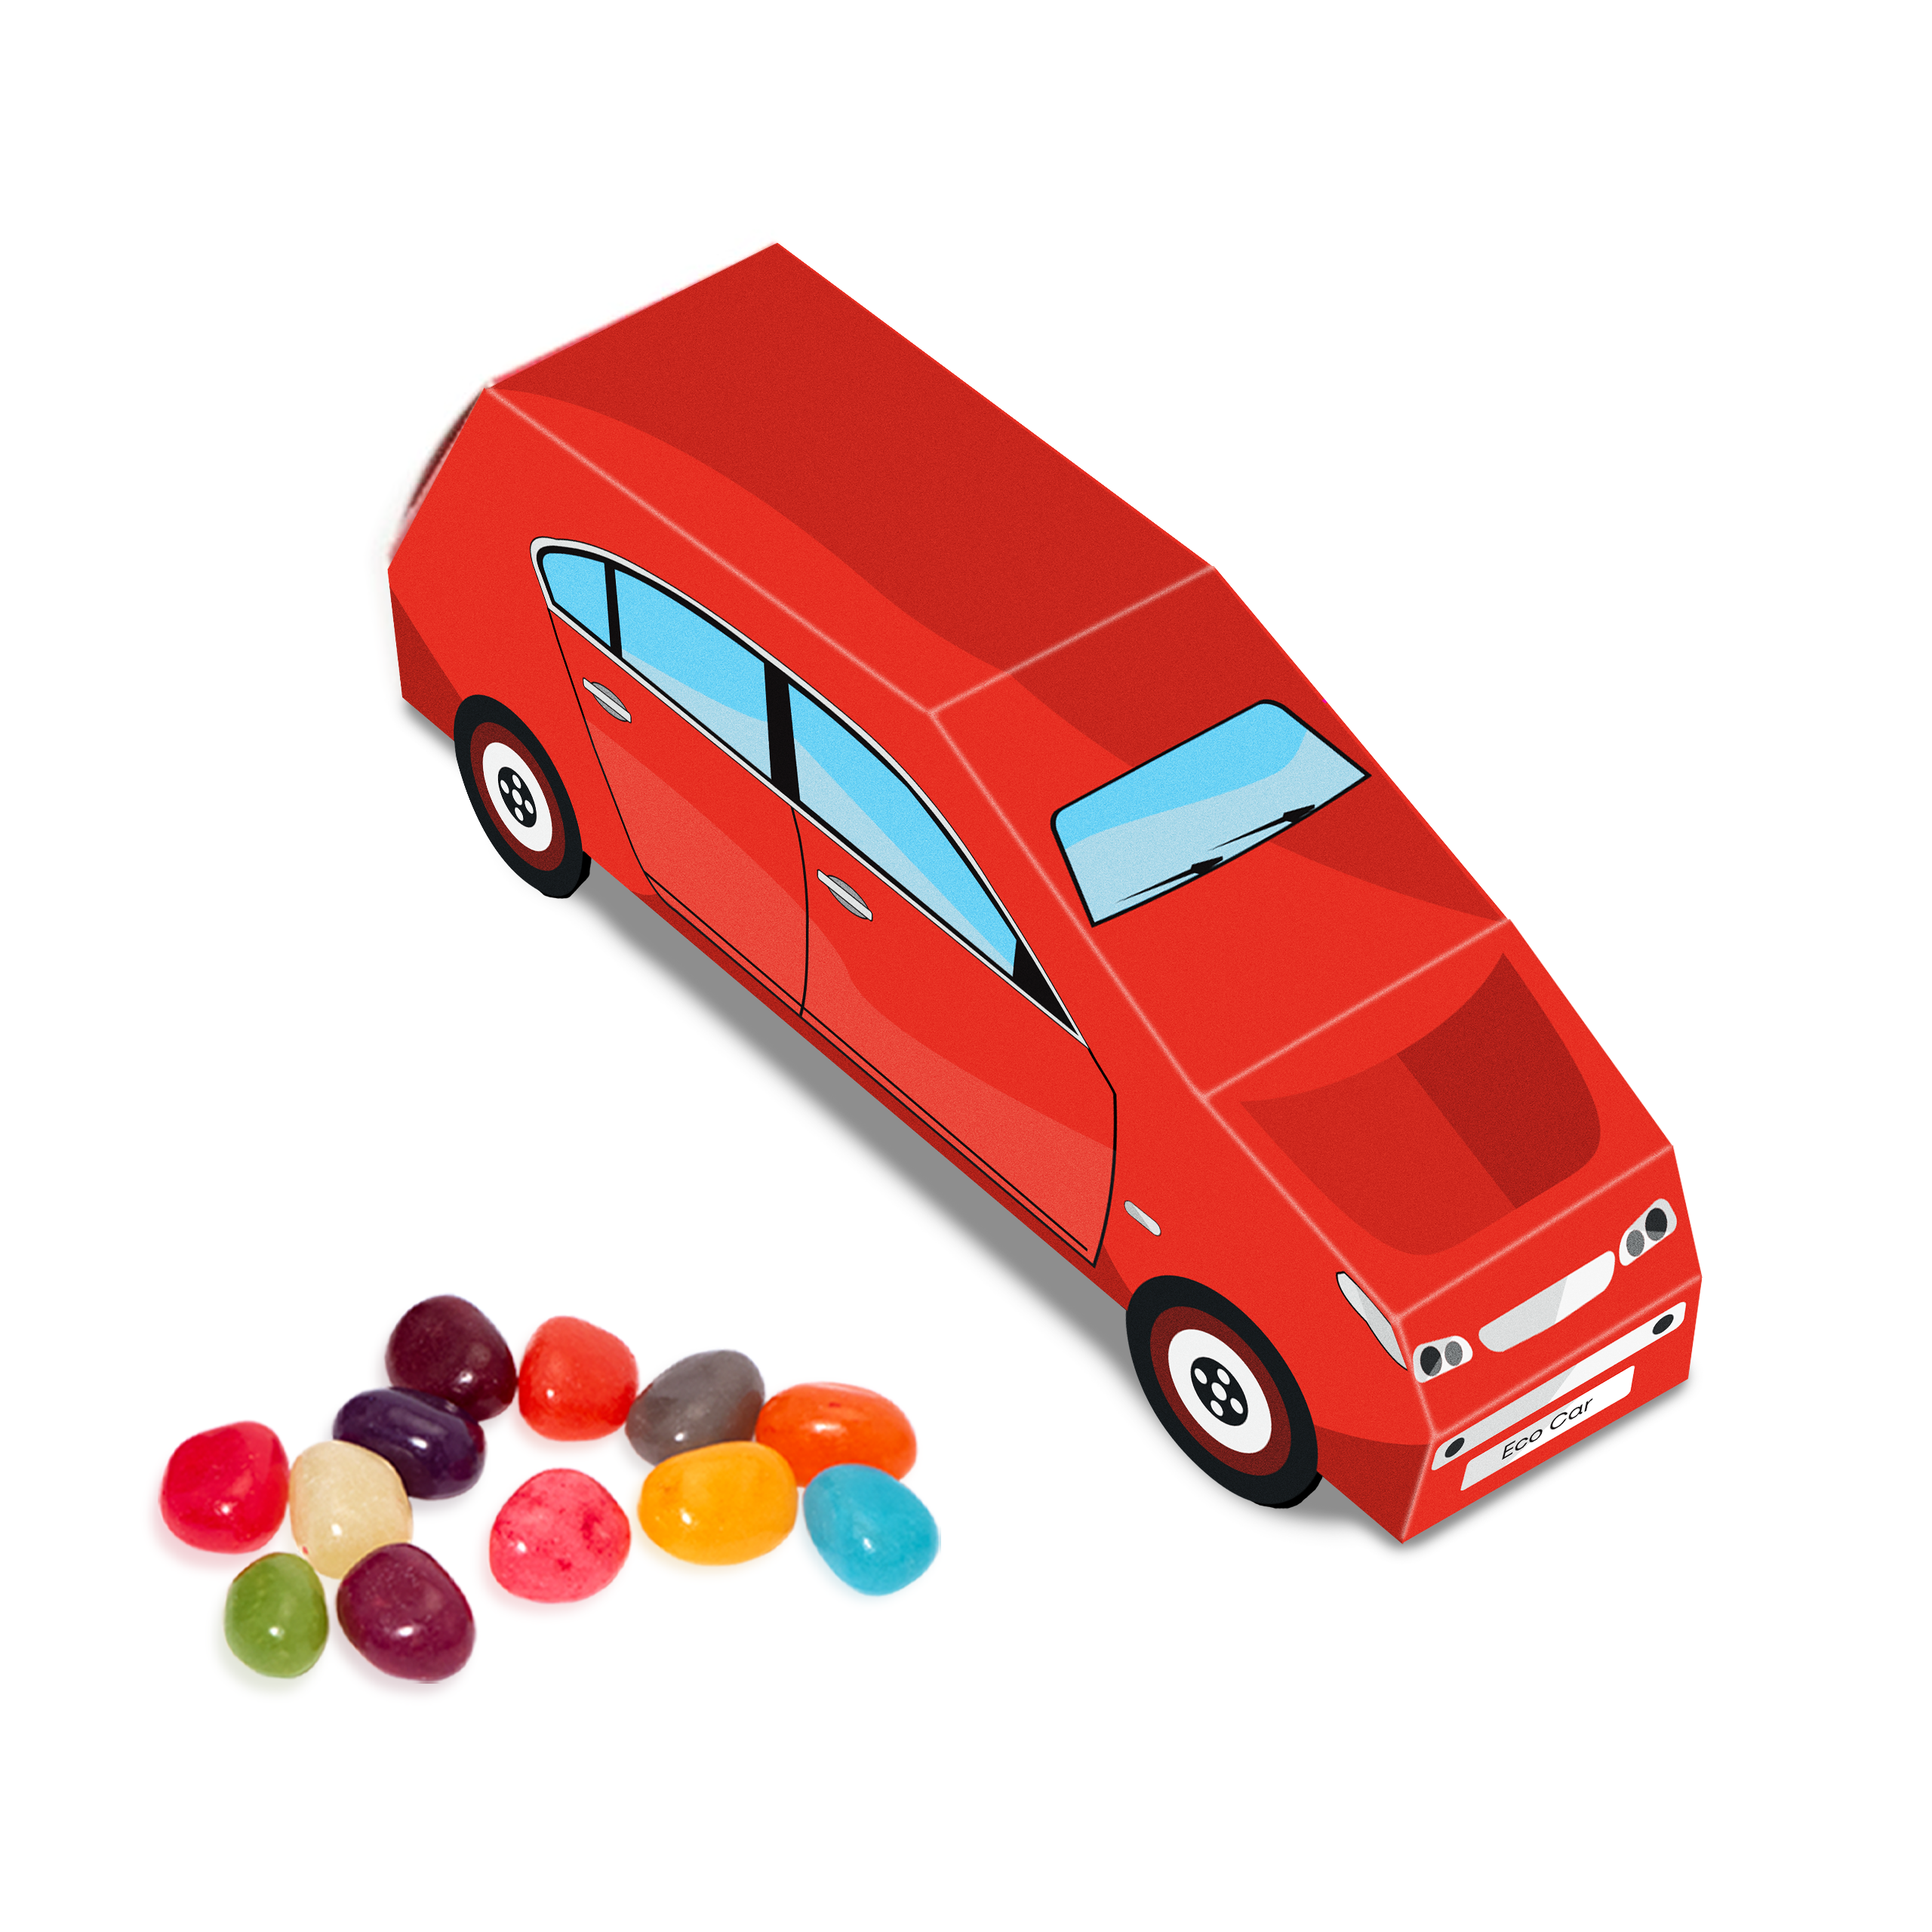 Eco Range - Eco Car Box - Jelly Bean Factory®